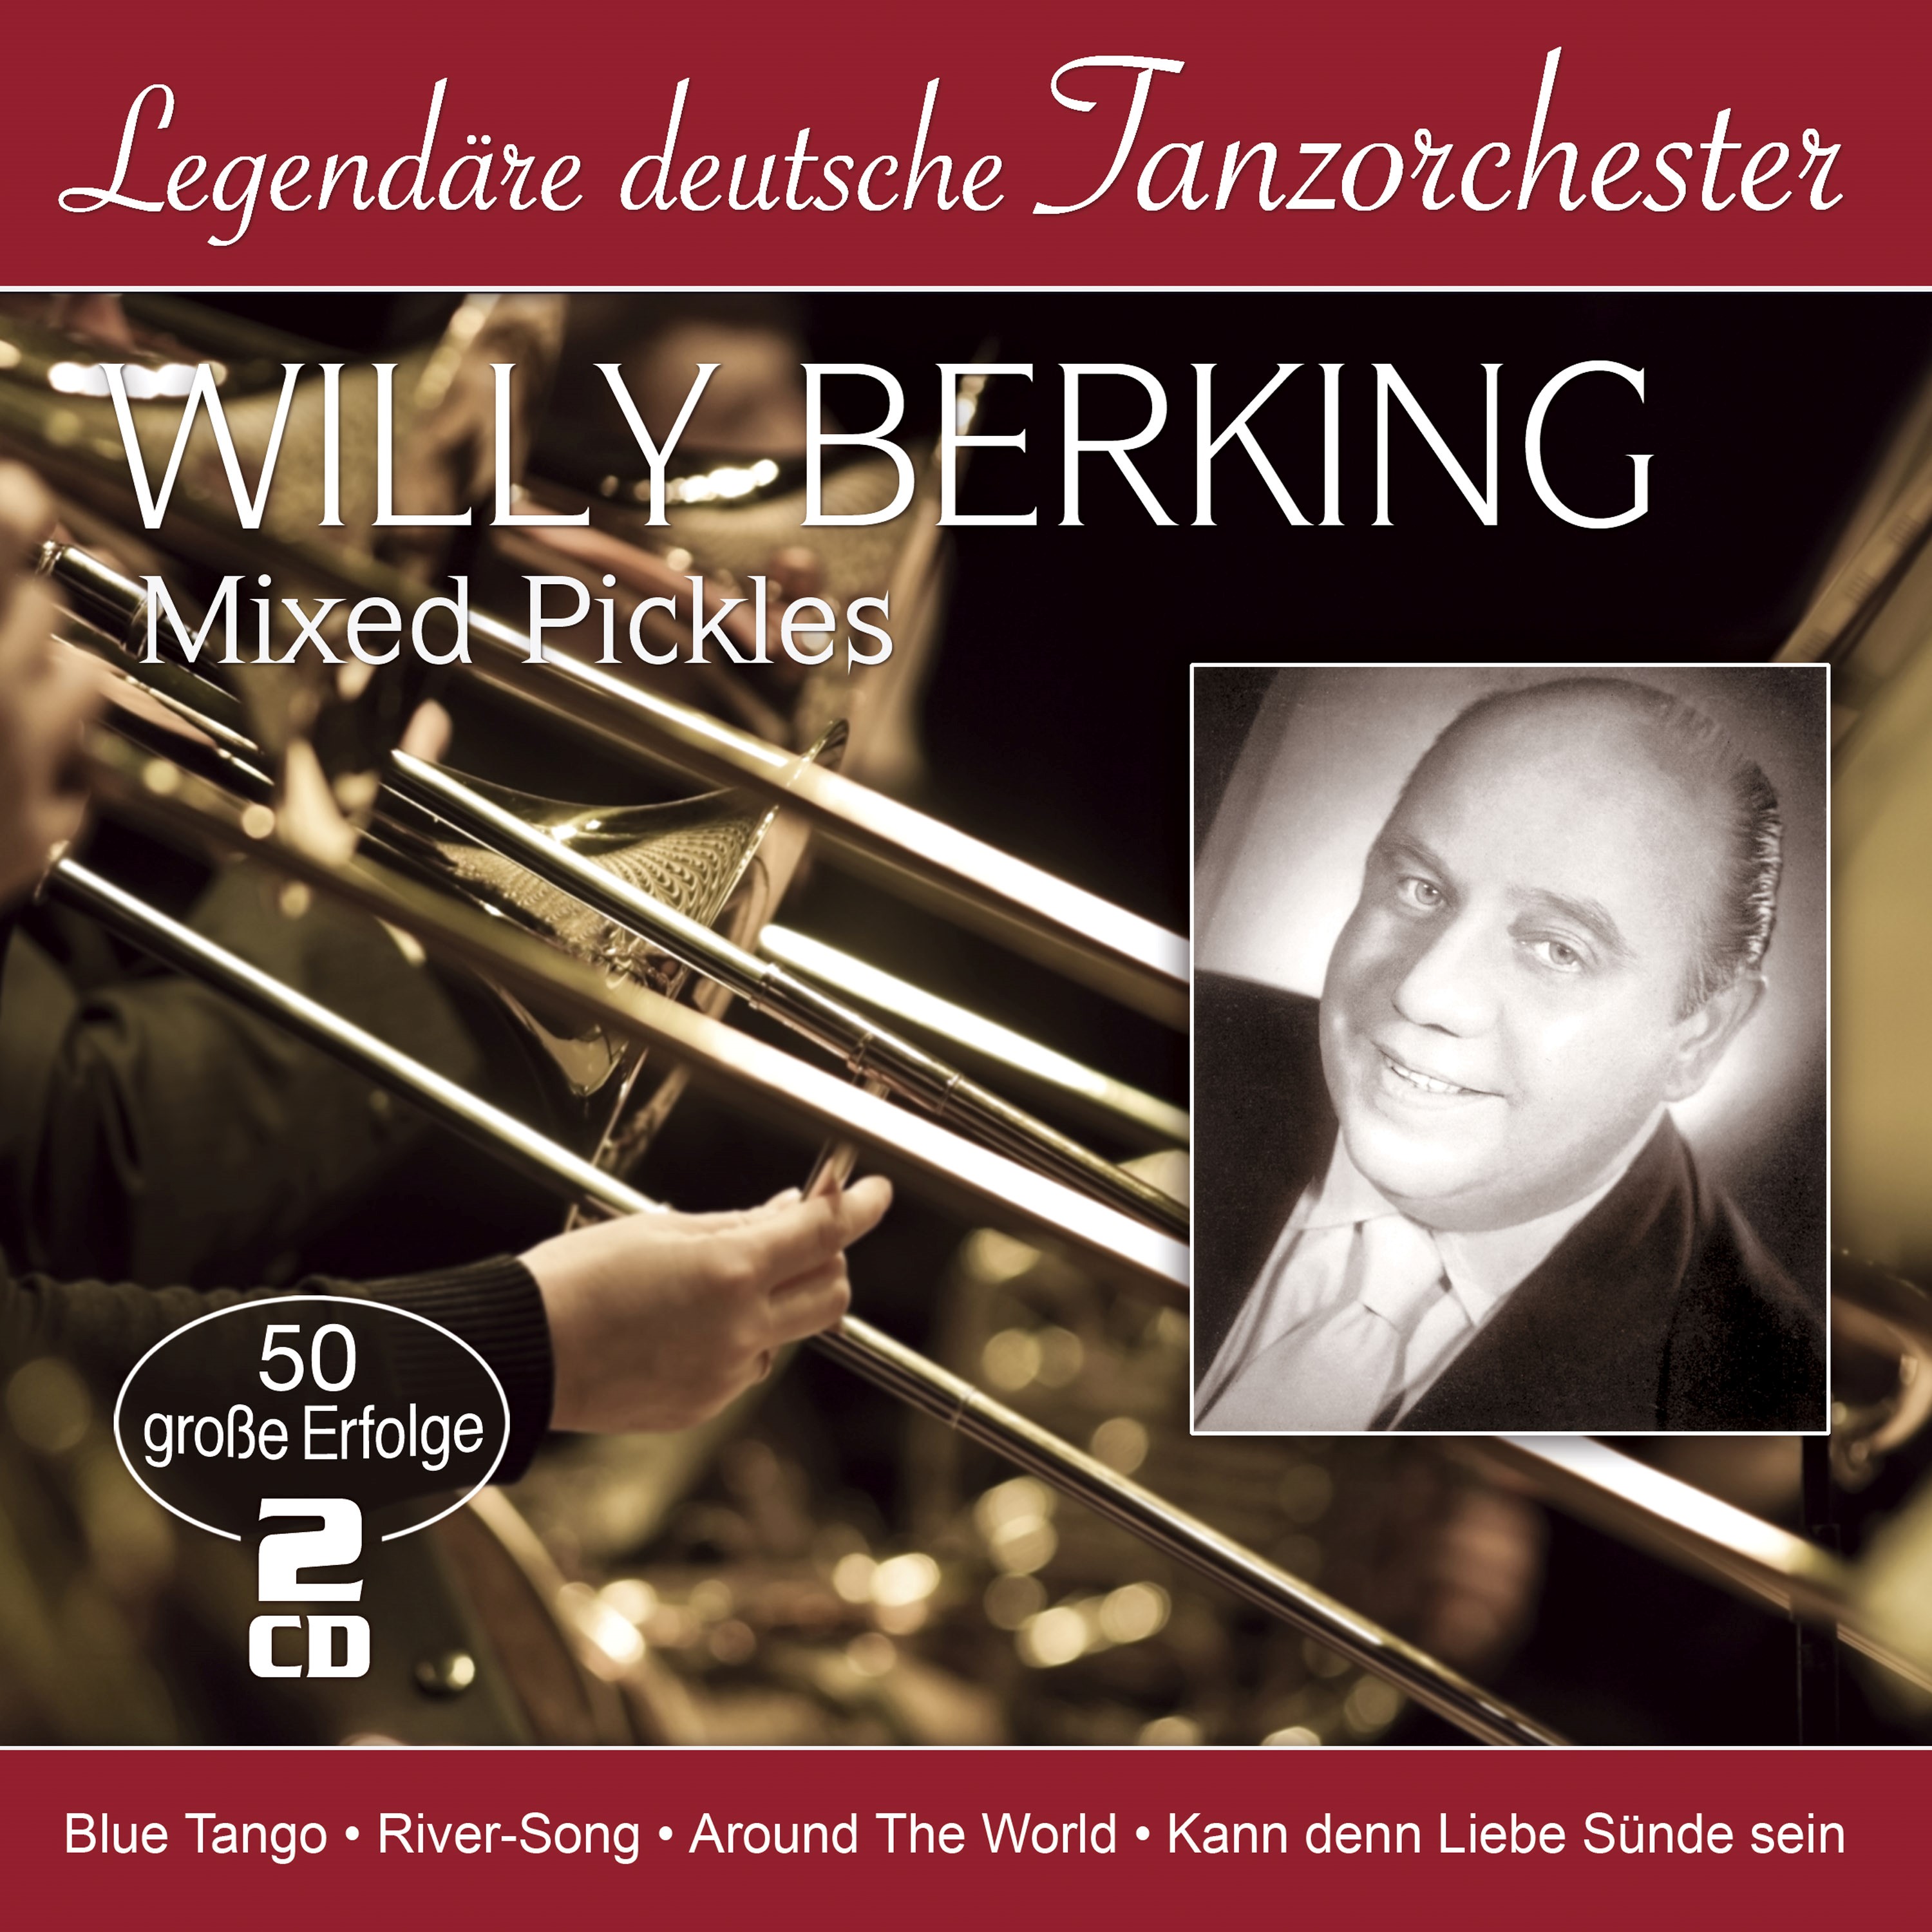 Berking, Willy - Mixed Pickles - 50 große Erfolge (Legendäre deutsche Tanzorchester)